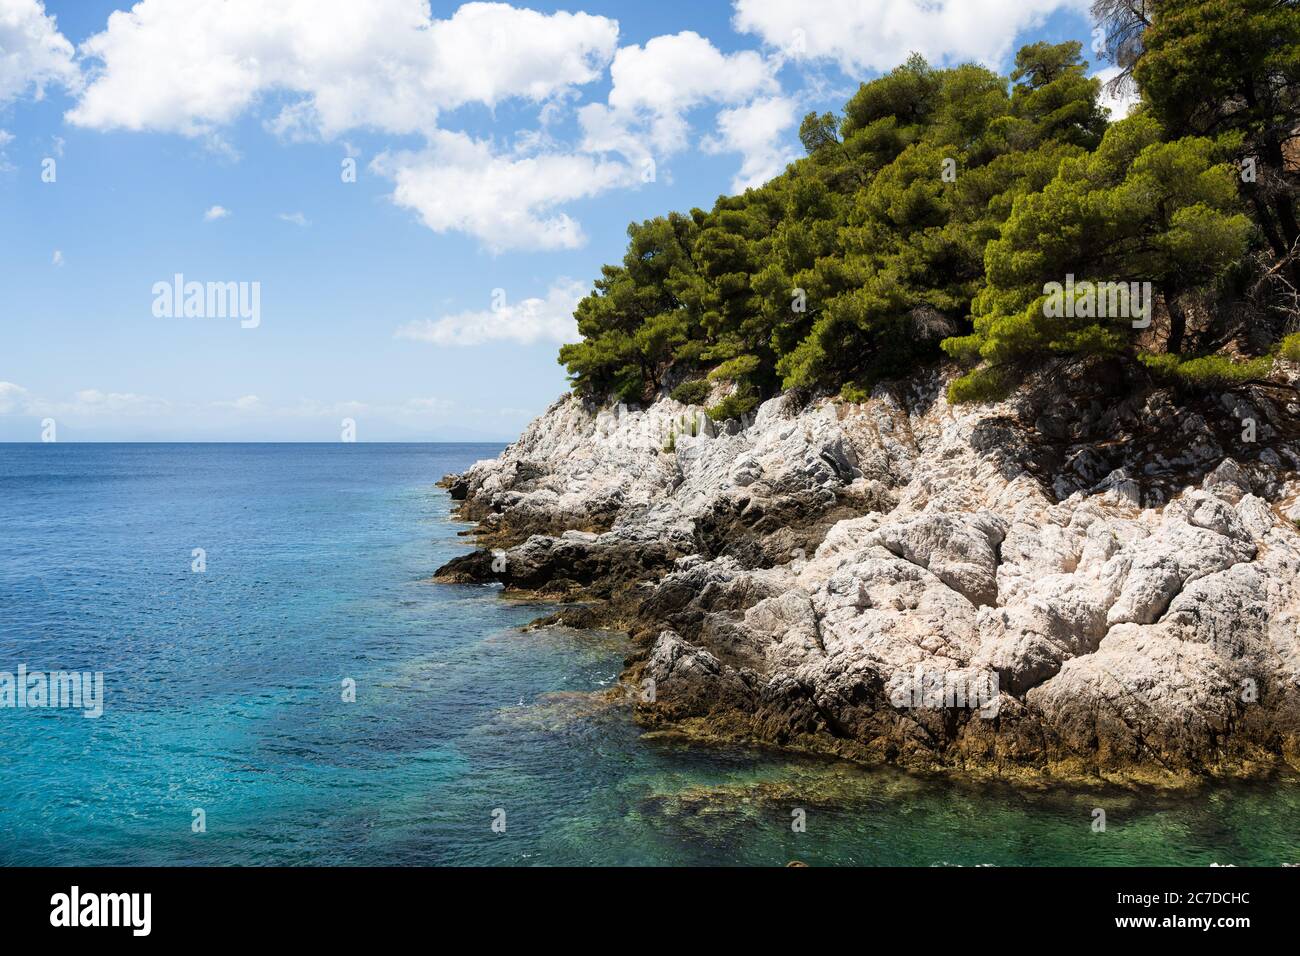 La côte rocheuse blanche avec des arbres et mer bleue calme de l'île grecque de Skopelos des Sporades. Banque D'Images